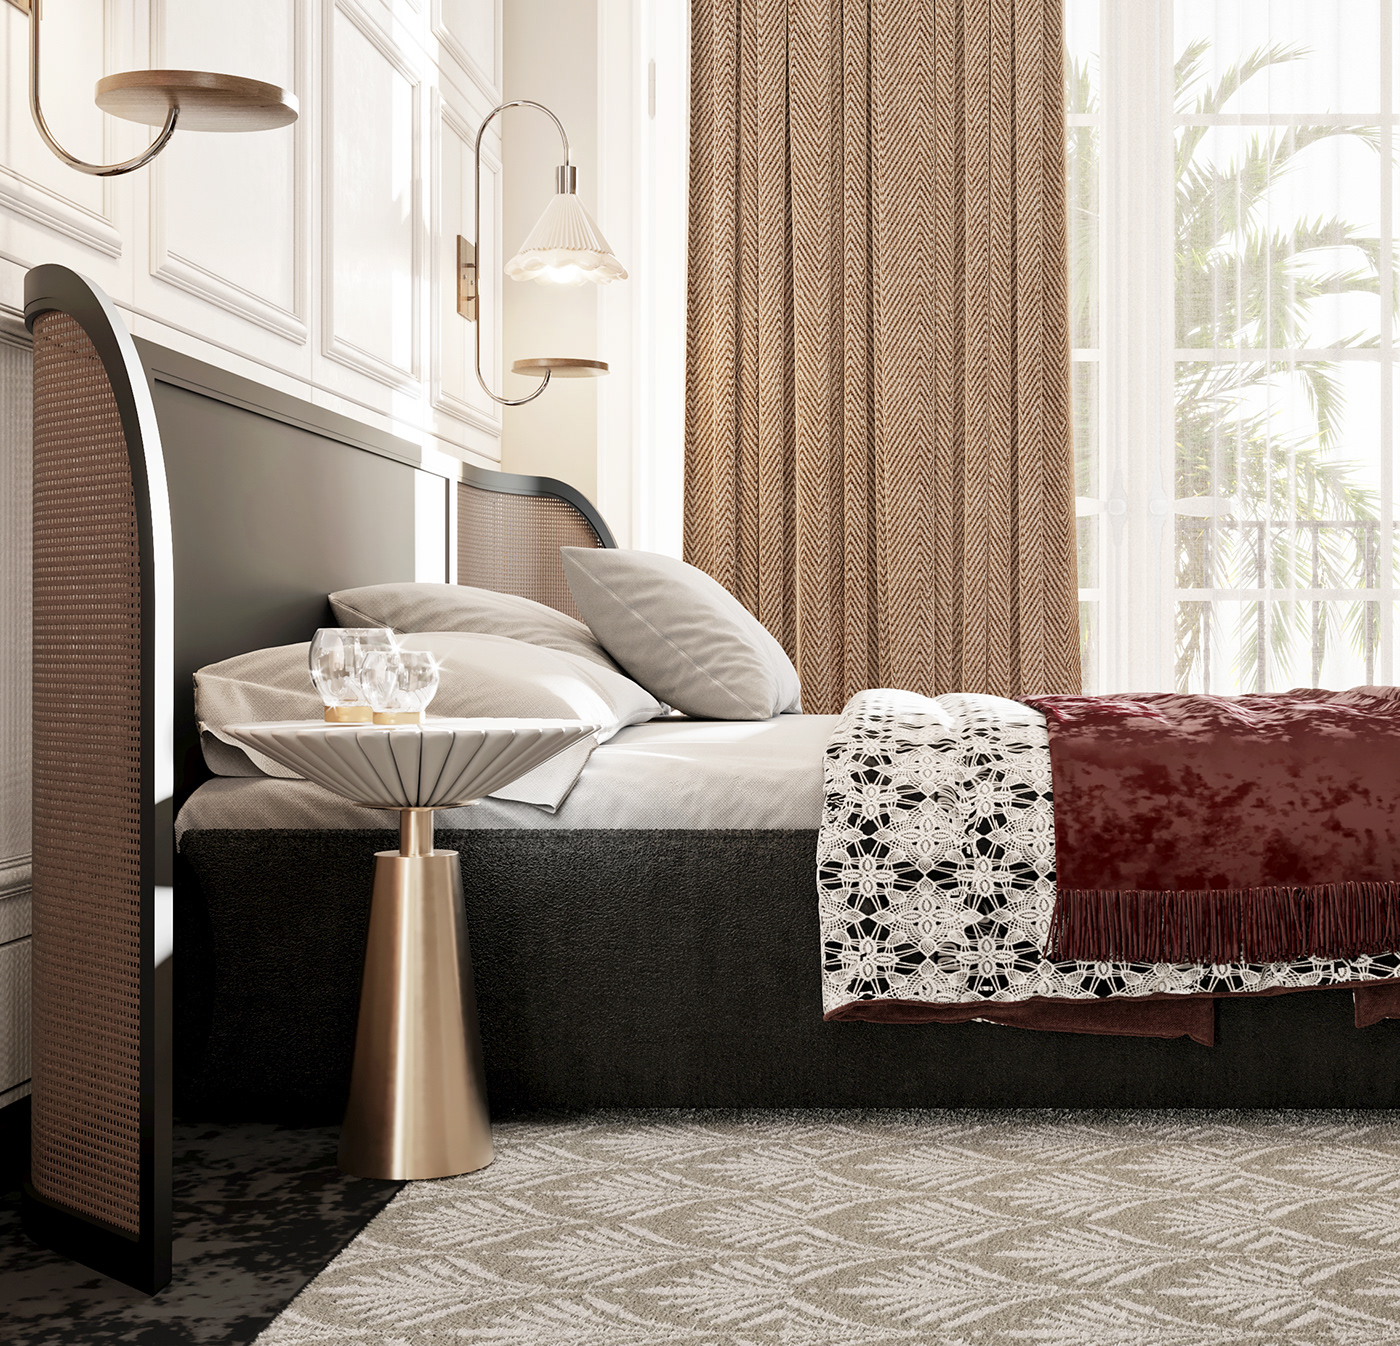 suite bedroom bedroom design 3dsmax creative living room corona Render architecture 3D